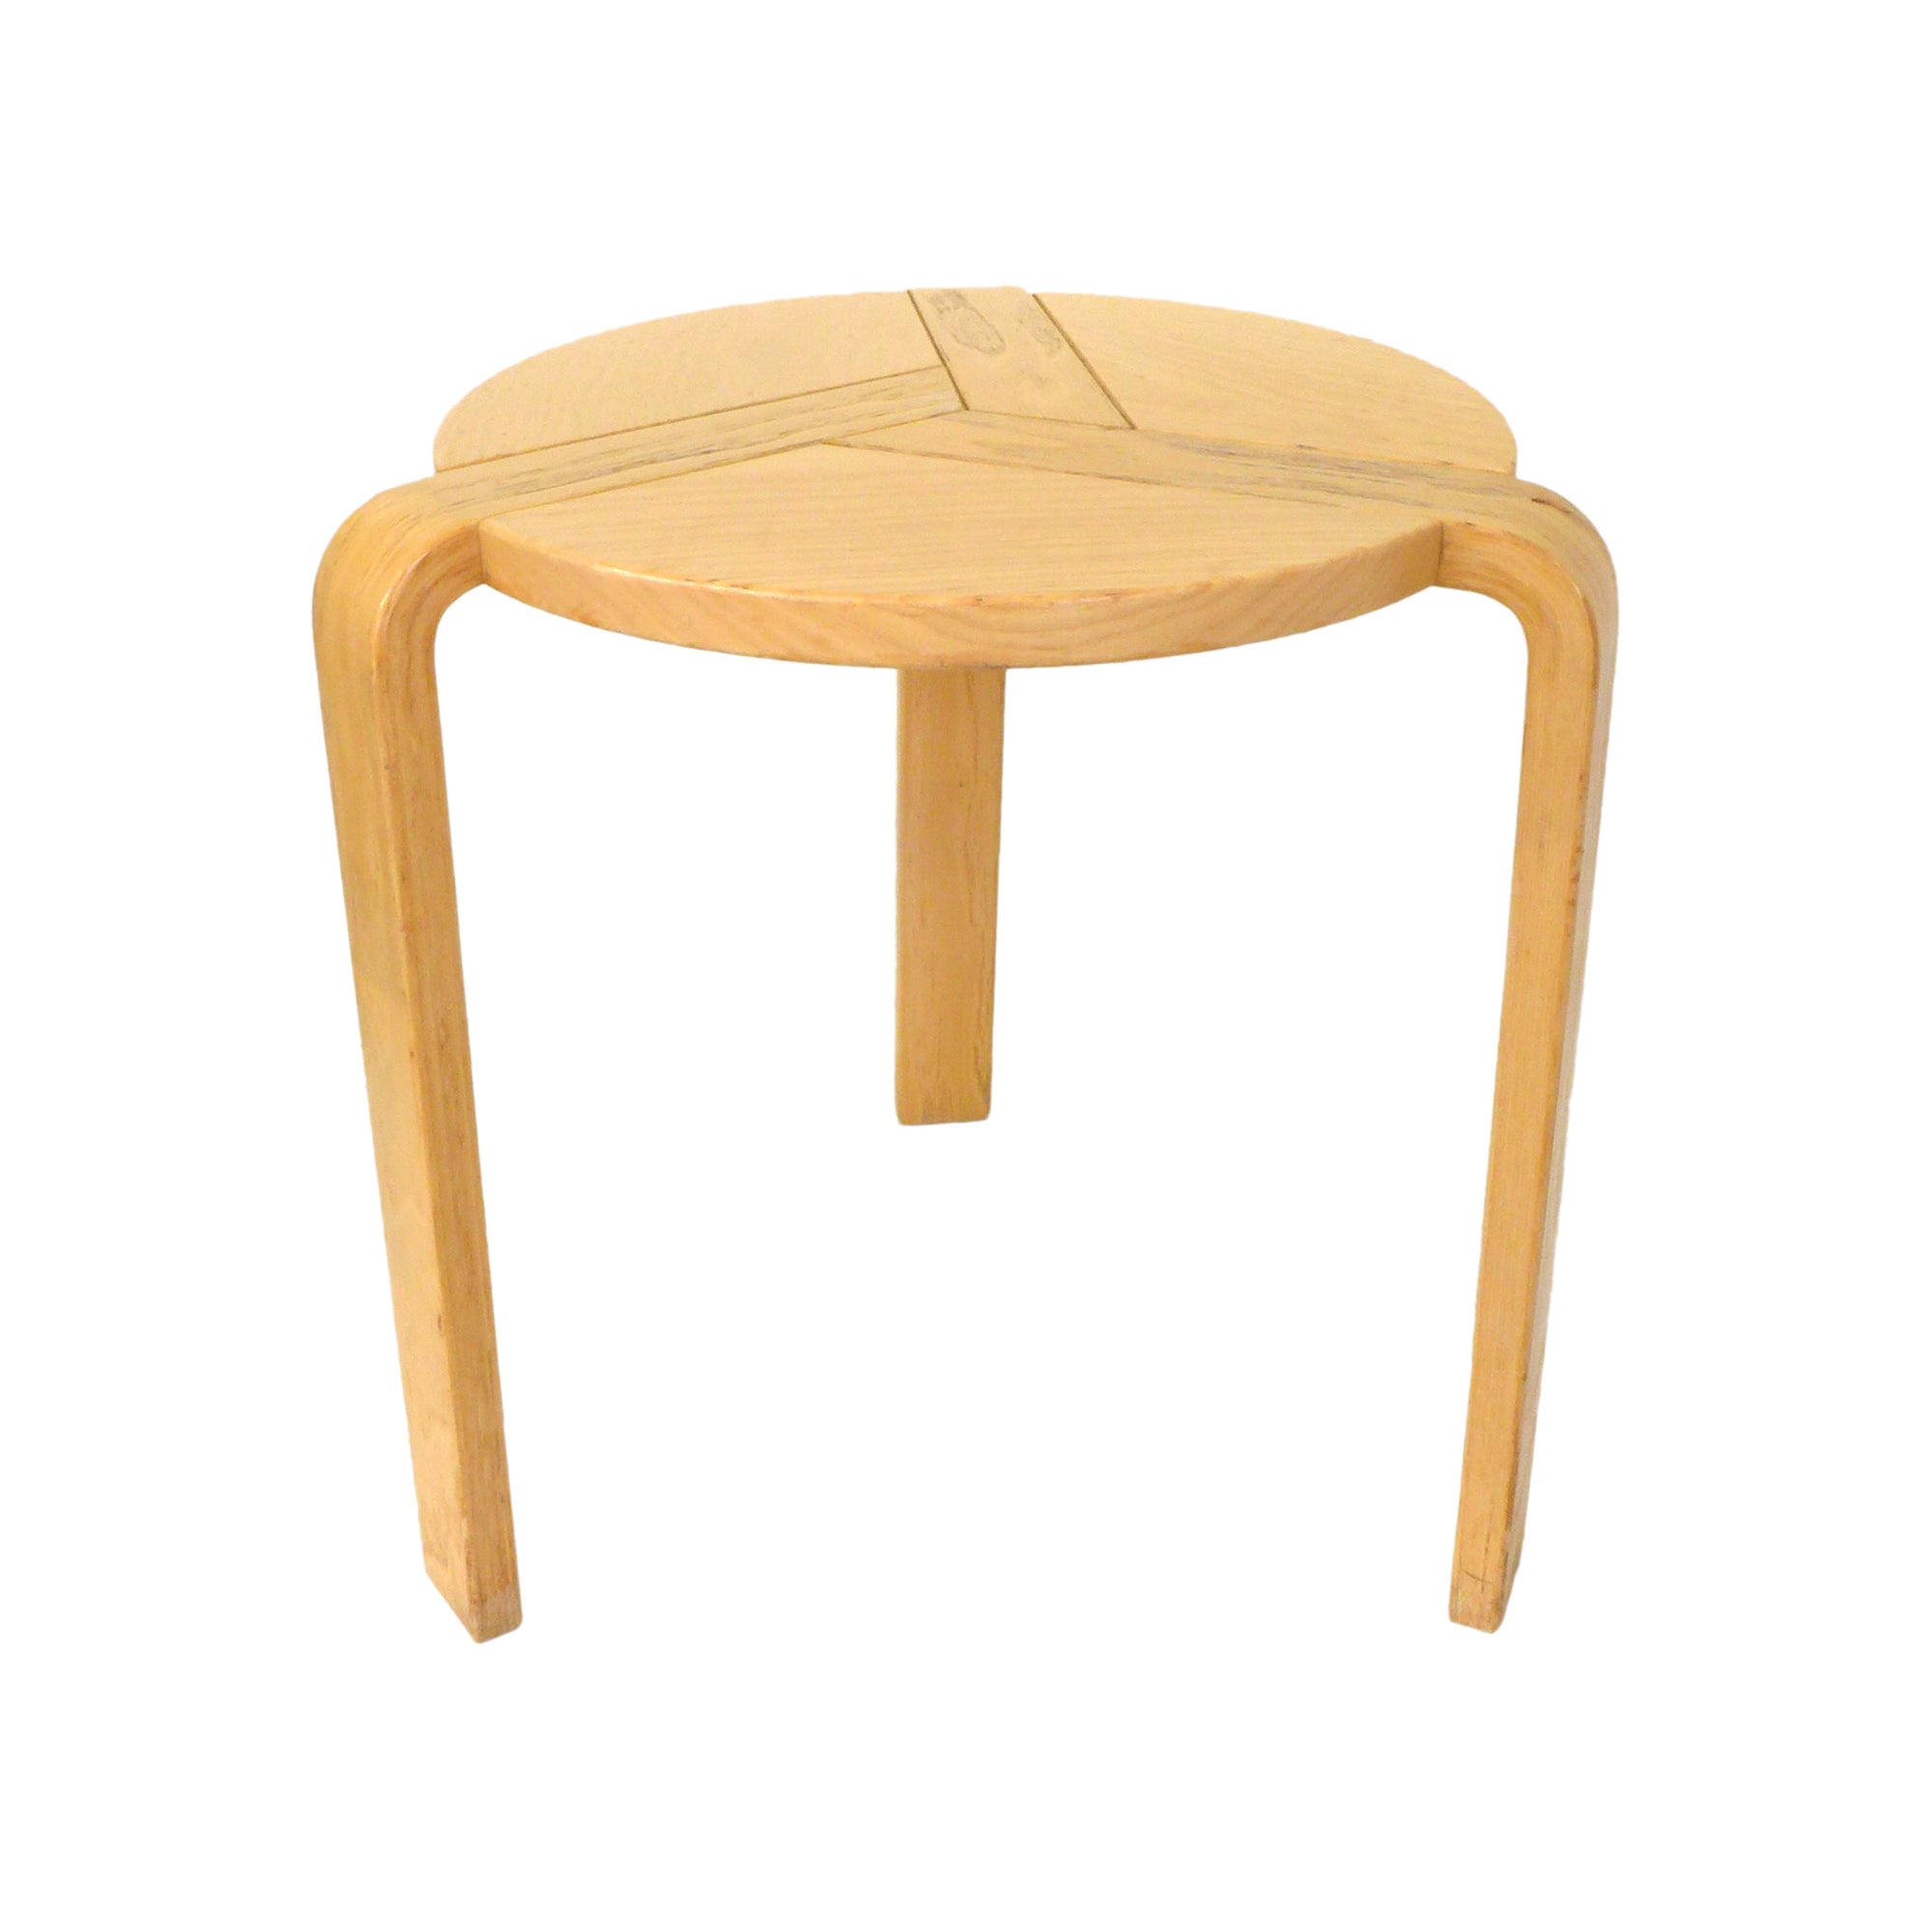 Blonde Wood Three-Legged Side Table or Stool